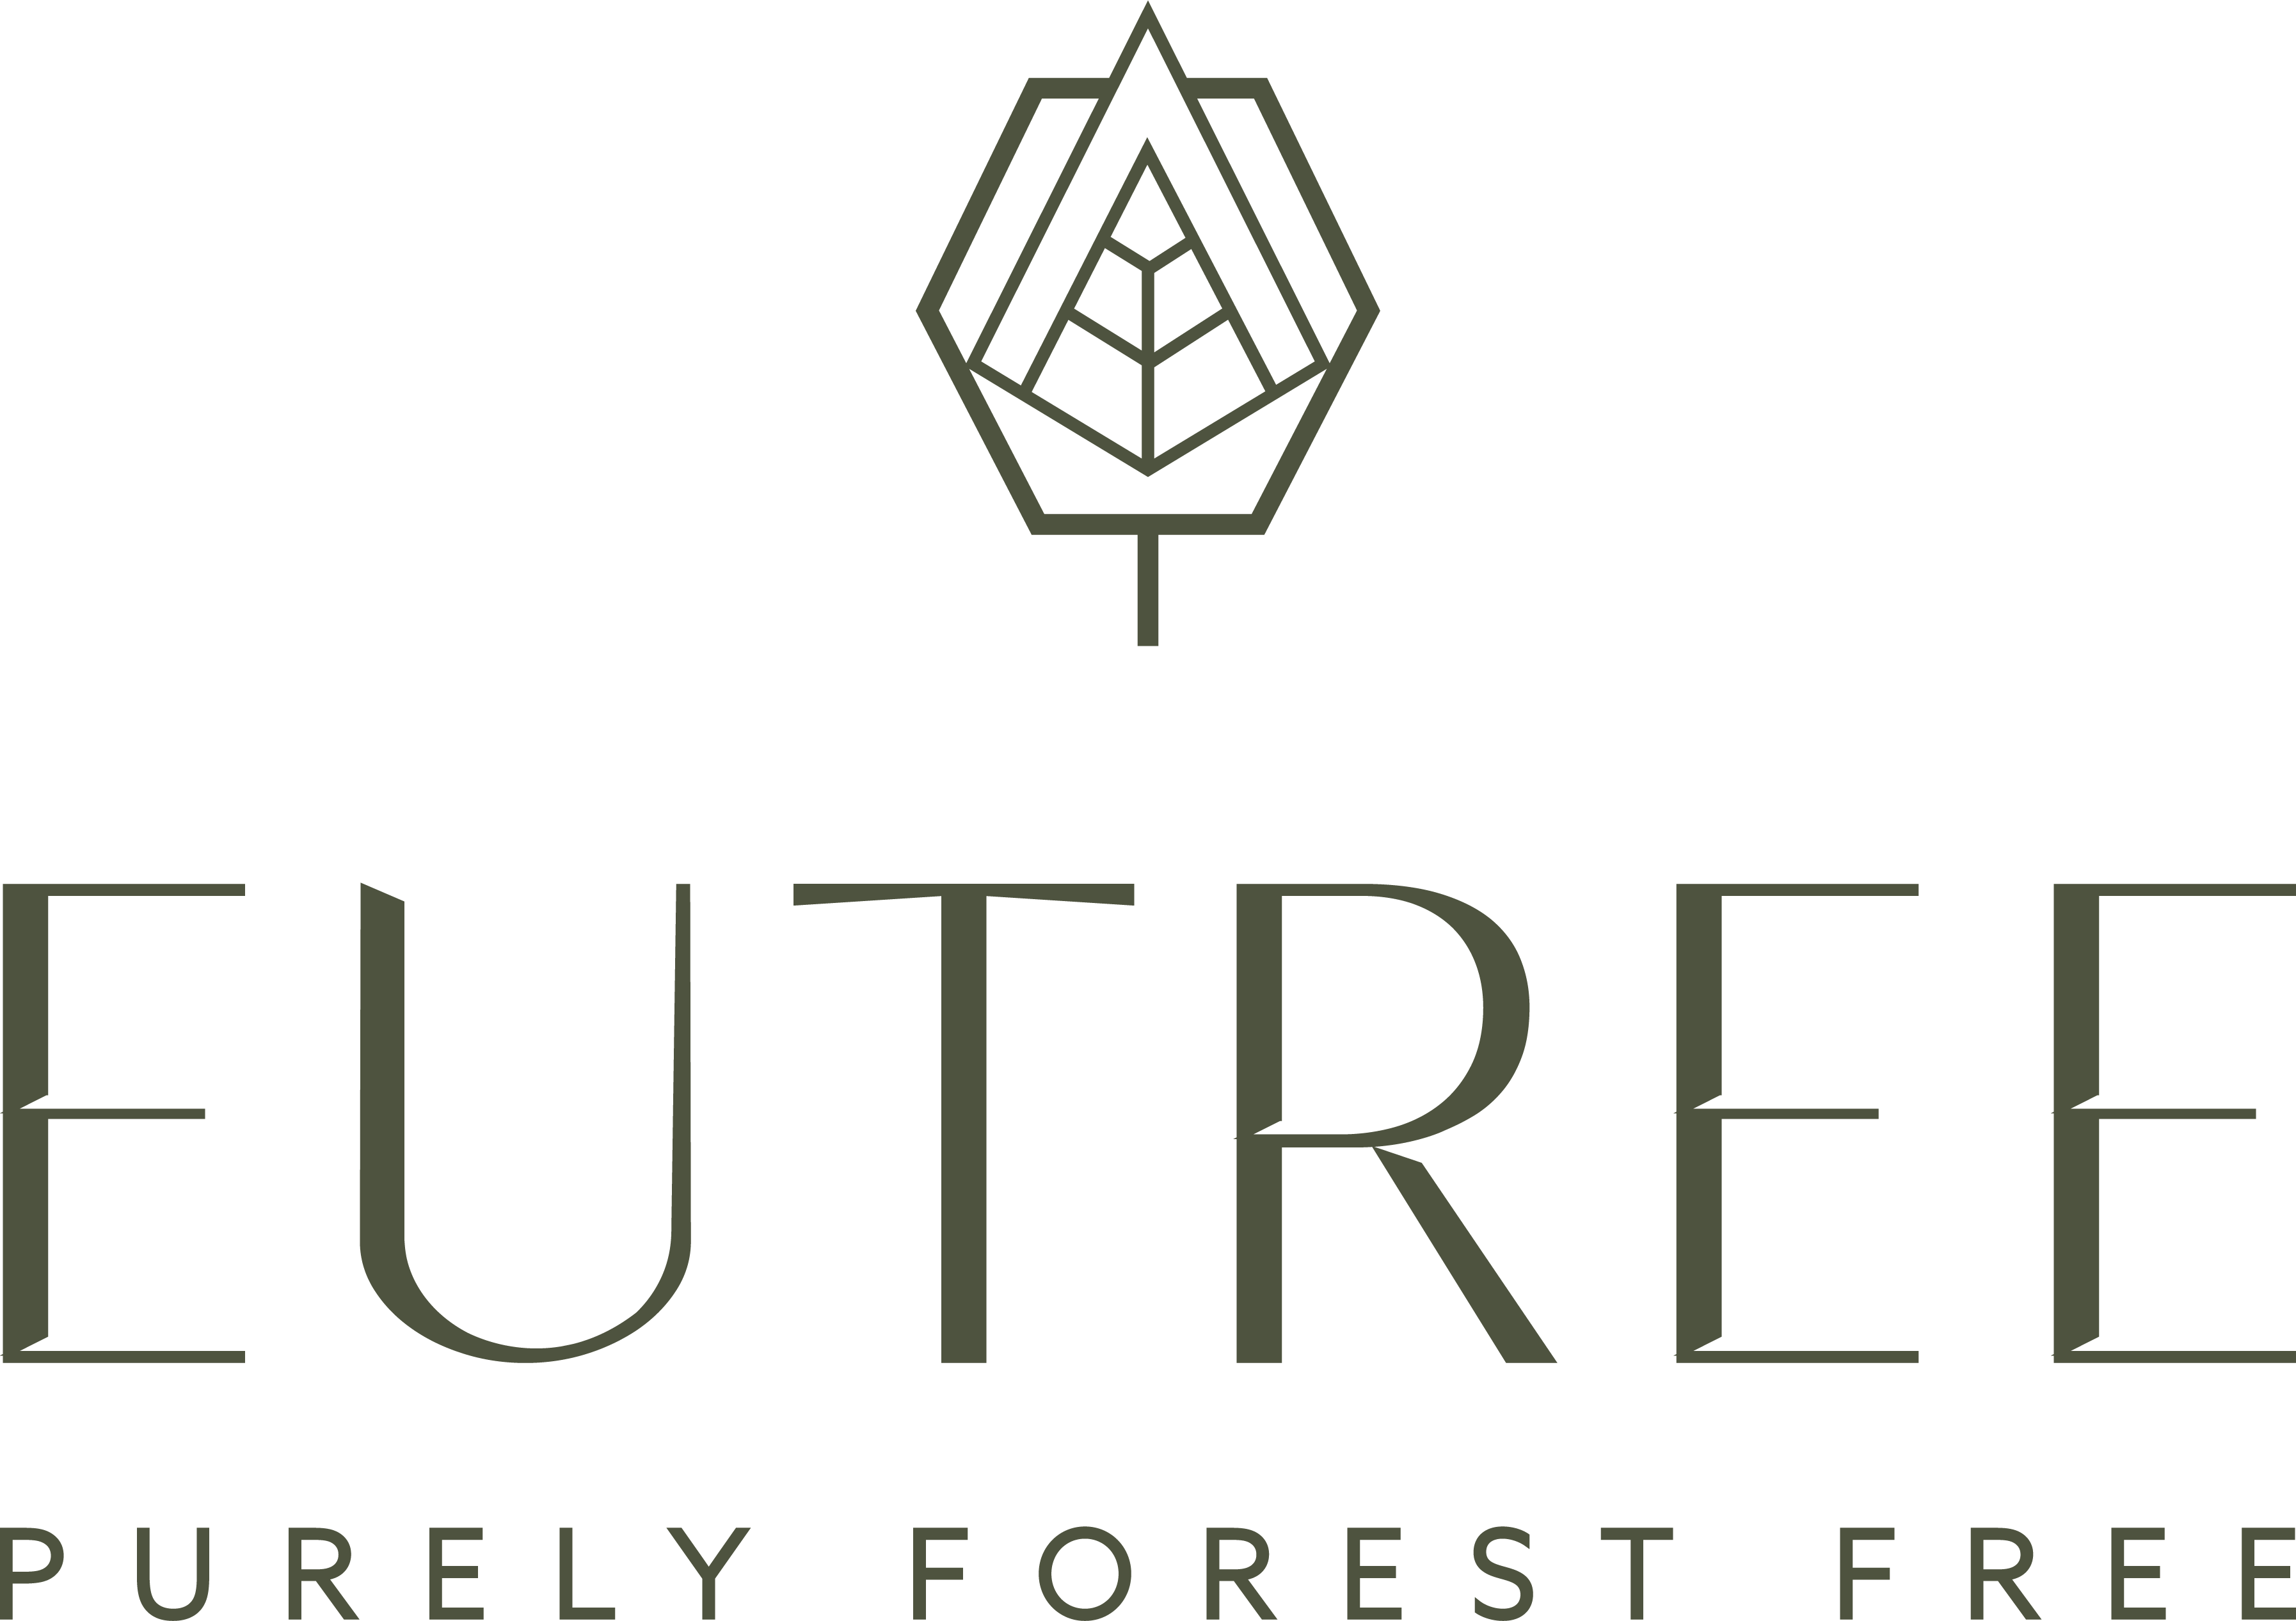 Eutree Logo